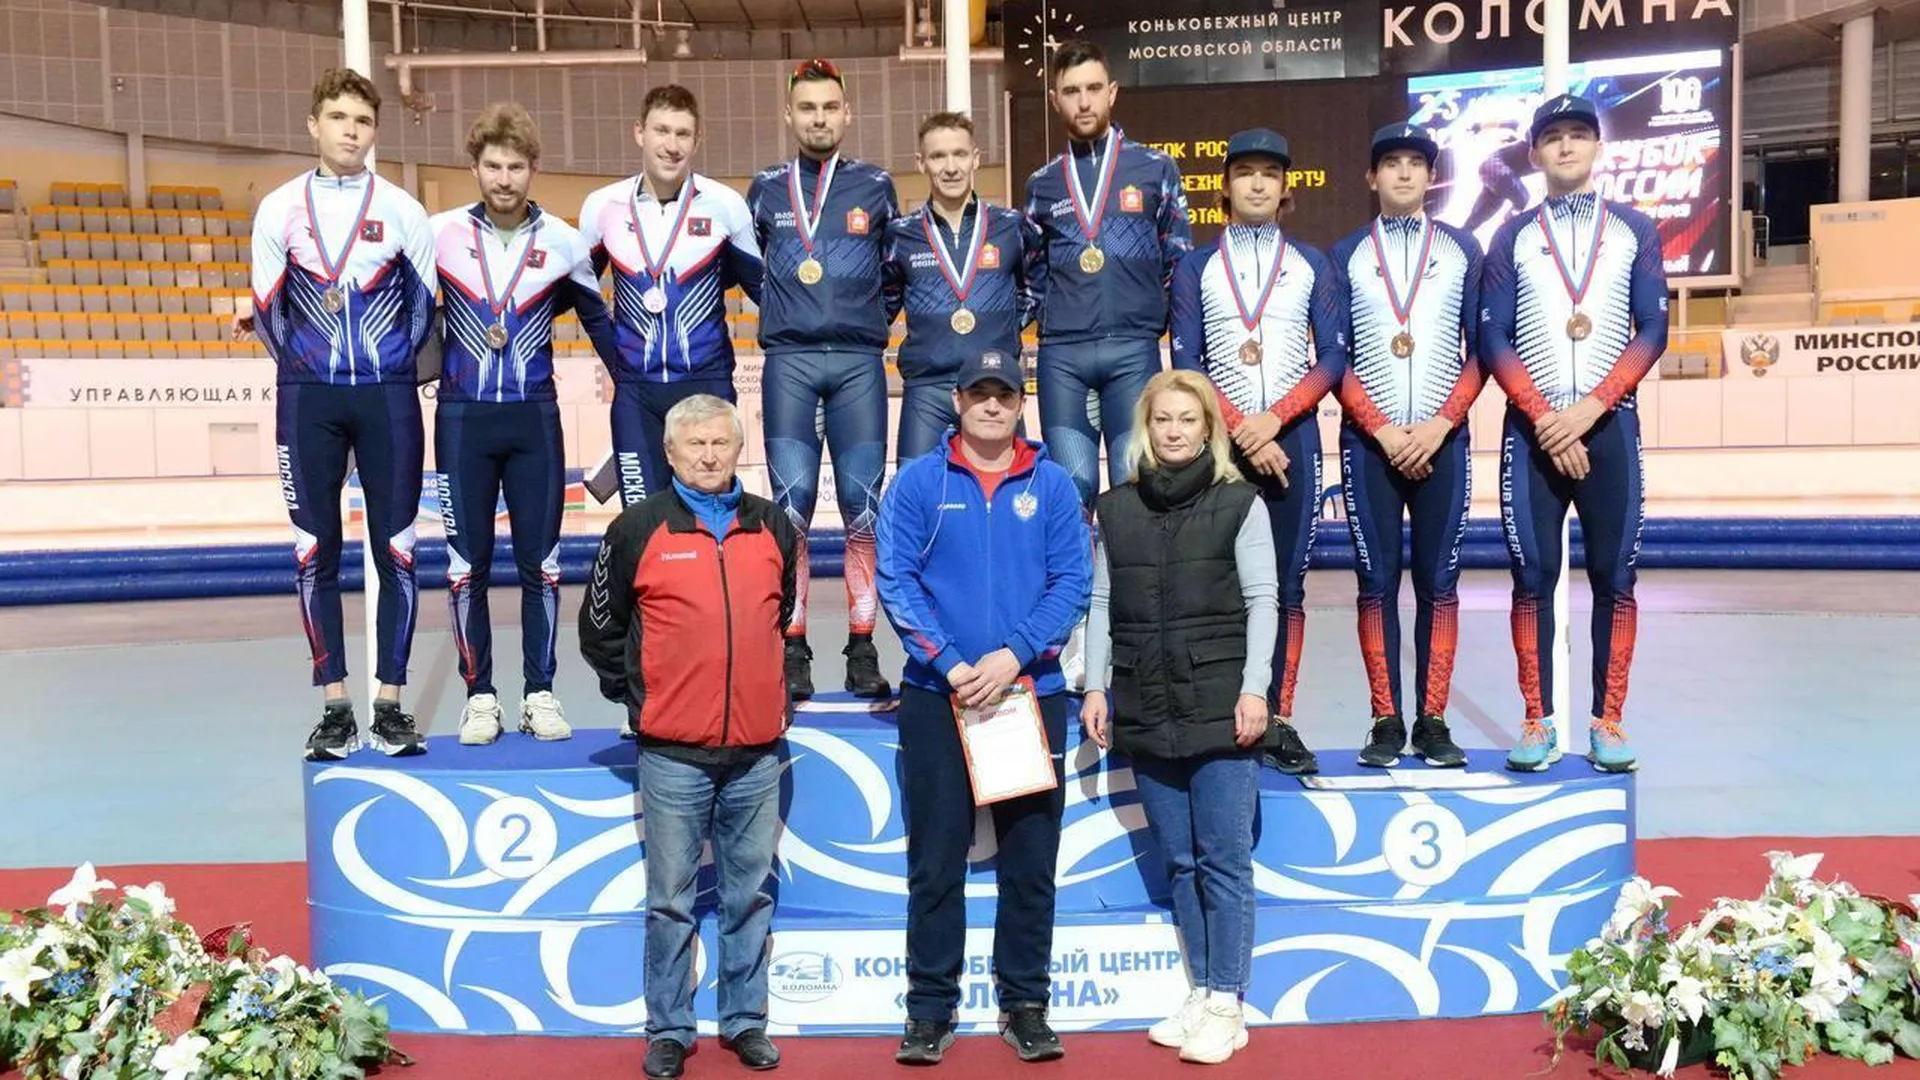 Подмосковные конькобежцы завоевали 9 медалей на Кубке России в Коломне